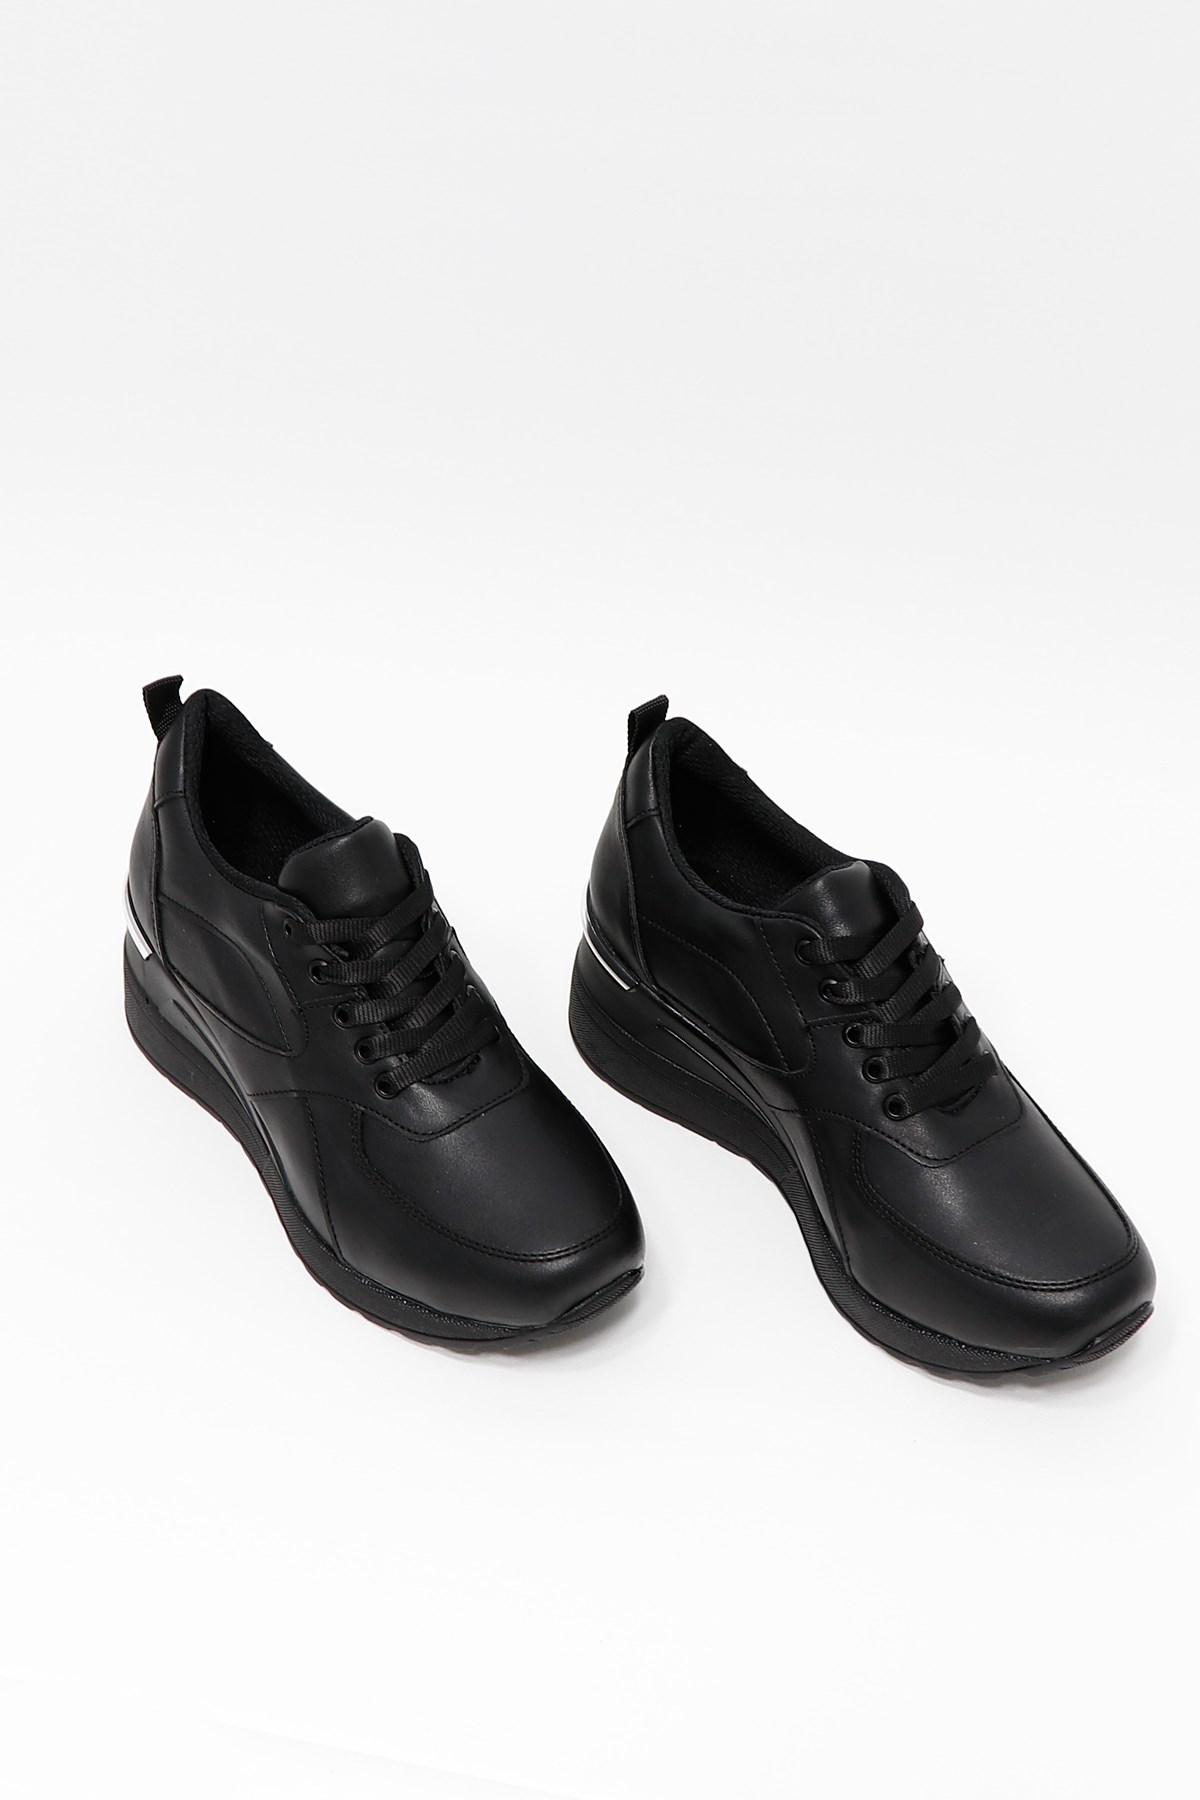 Siyah Dolgu Topuk Bağlı Spor Ayakkabı 609 Fiyatı ve Modelleri